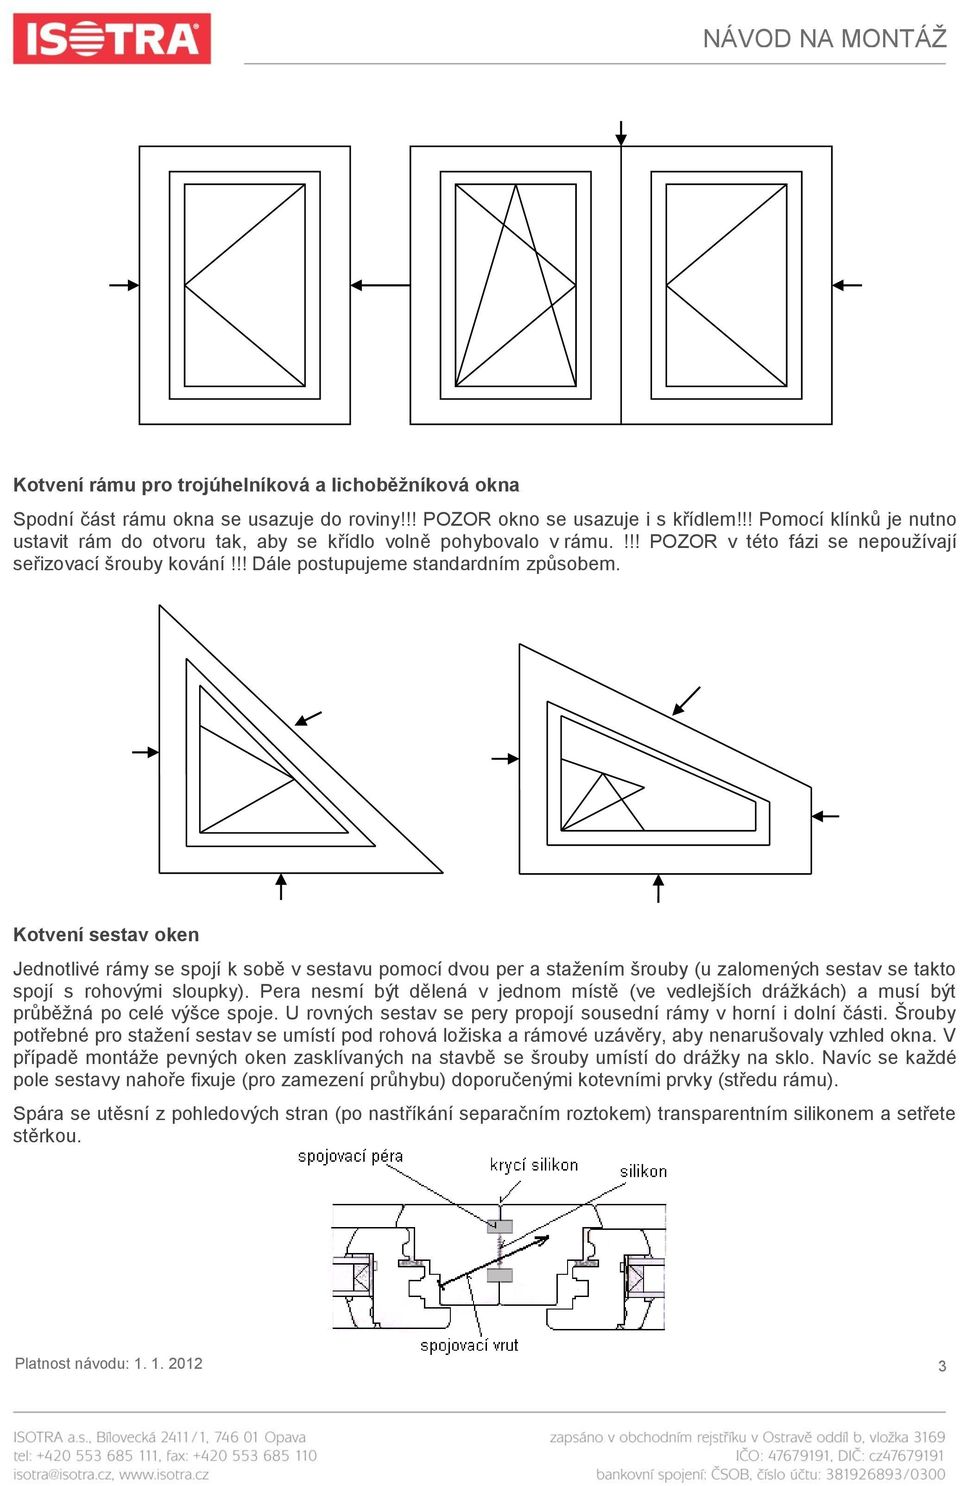 Kotvení sestav oken Jednotlivé rámy se spojí k sobě v sestavu pomocí dvou per a staţením šrouby (u zalomených sestav se takto spojí s rohovými sloupky).